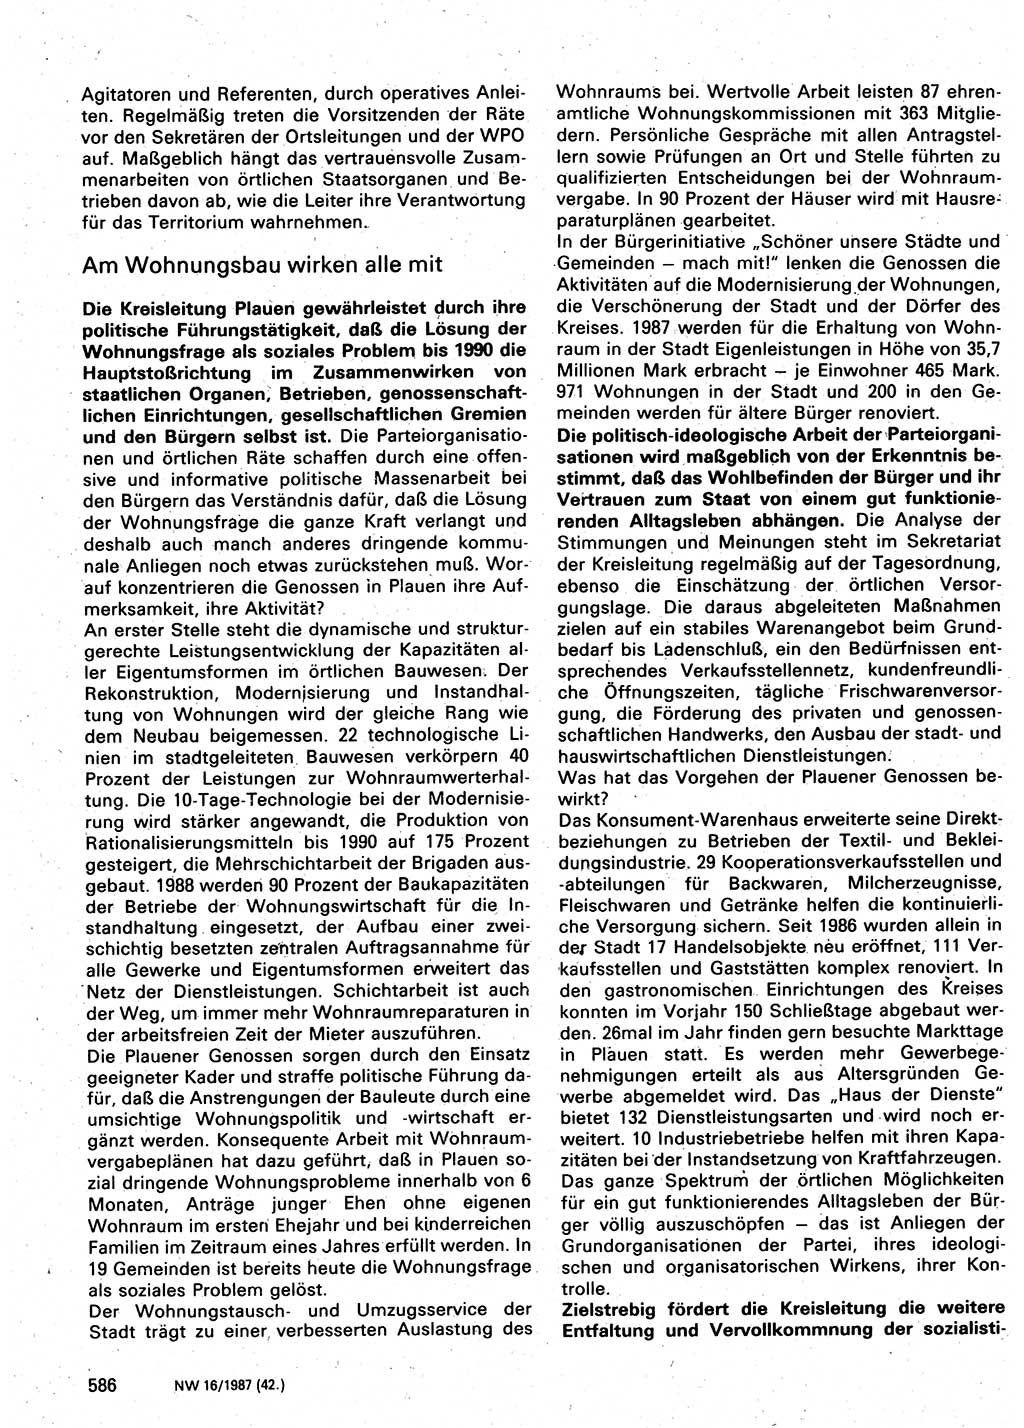 Neuer Weg (NW), Organ des Zentralkomitees (ZK) der SED (Sozialistische Einheitspartei Deutschlands) für Fragen des Parteilebens, 42. Jahrgang [Deutsche Demokratische Republik (DDR)] 1987, Seite 586 (NW ZK SED DDR 1987, S. 586)